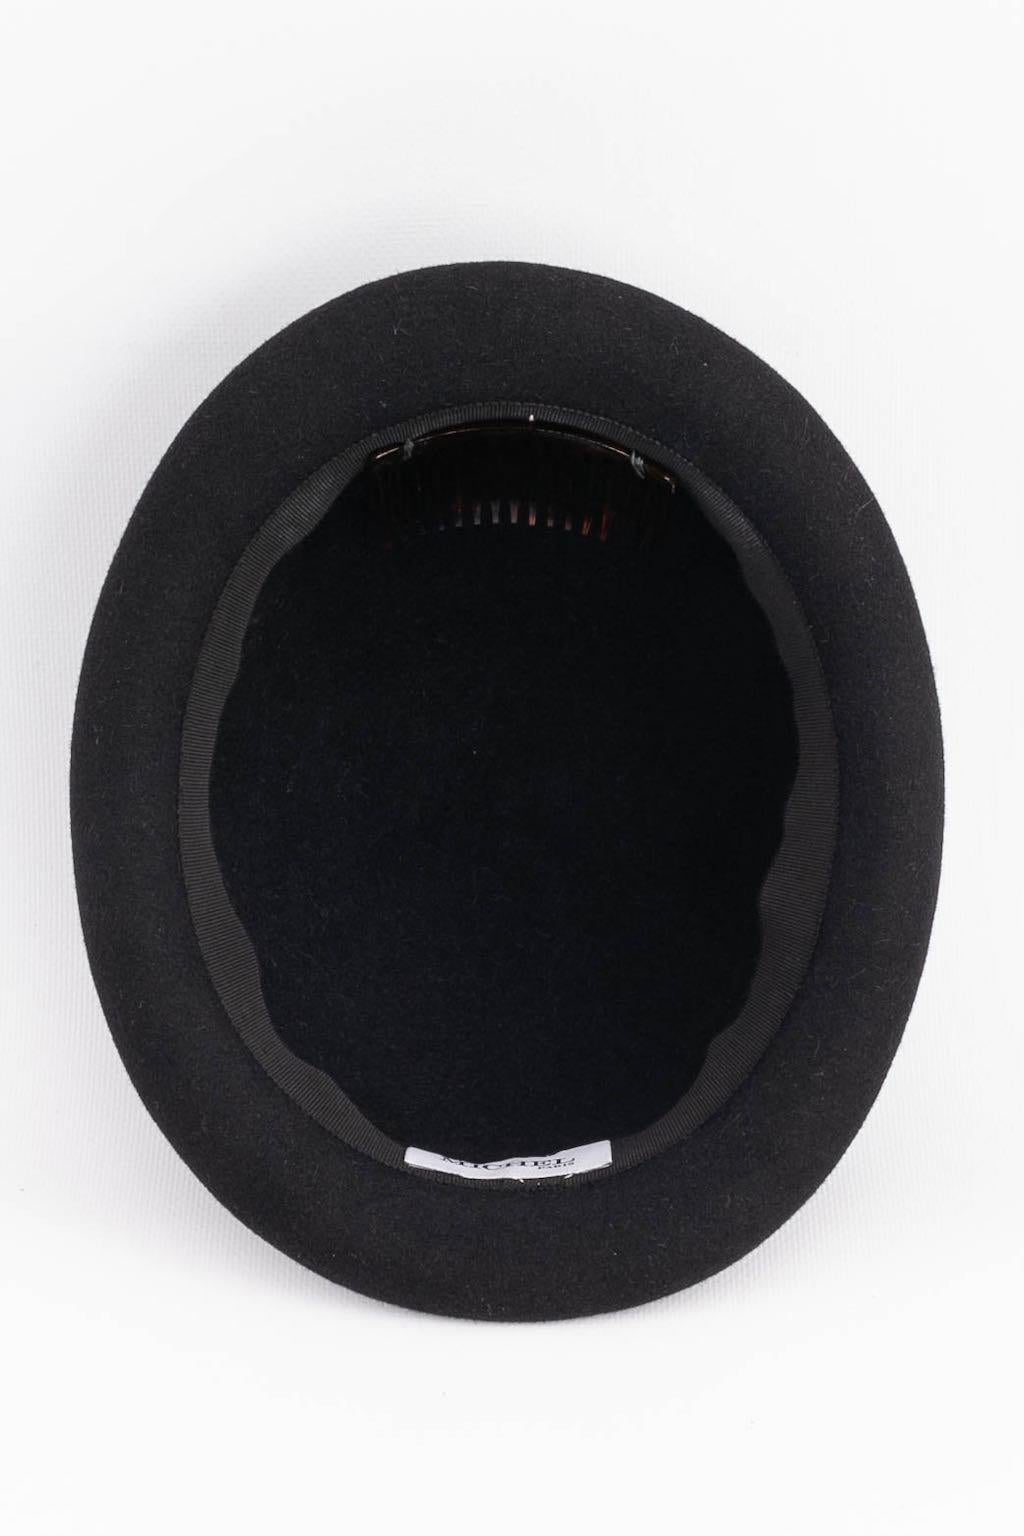 Maison Michel Black Felt Bowler Hat For Sale 1